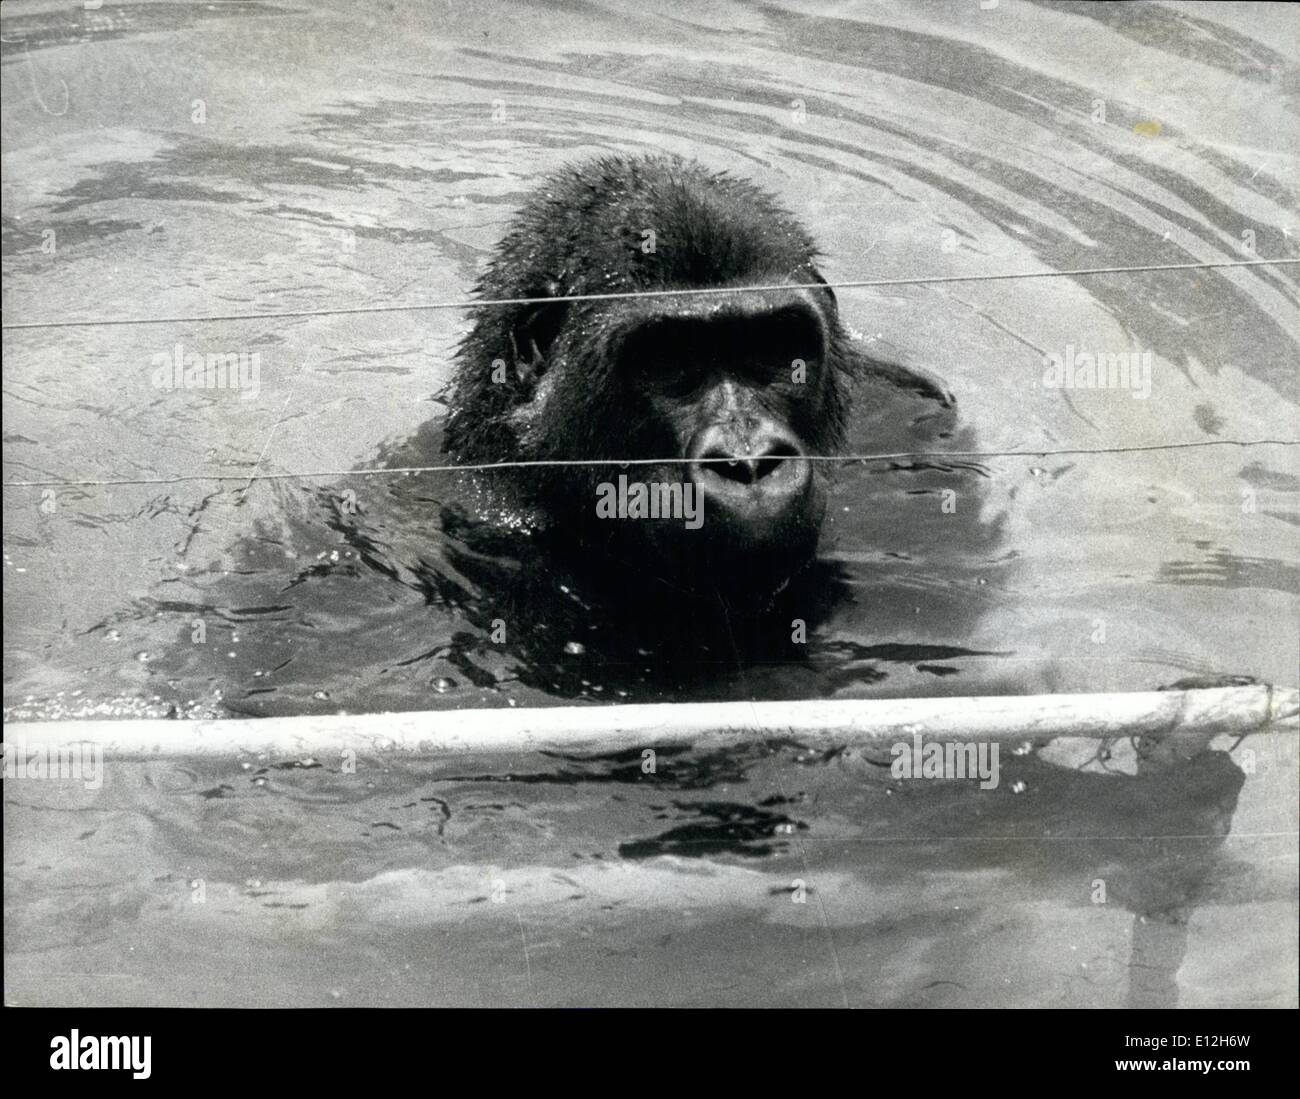 10. Januar 2012 - Affen Gorilla Wärter - und lernt schwimmen: Wasserspiel ist nicht etwas, die Gorillas zu genießen, in der Tat haben sie eine Abneigung gegen sie, Aruna, ein 7 Jahre alten Gorilla in Nigerias Thadan Zoo, schwimmen durch Kopieren der Bewegungen von ihrem Halter lernen ist. Um Aruna und ihr Partner verhindern, indem man aus ihrer Tiefe ertrinken, das Beste aus der Gorilla-Verbindung mit einem Elektrozaun und Unterwasser Schienen versehen worden. Diese Drähte sind wirklich ein Ärgernis. Stockfoto